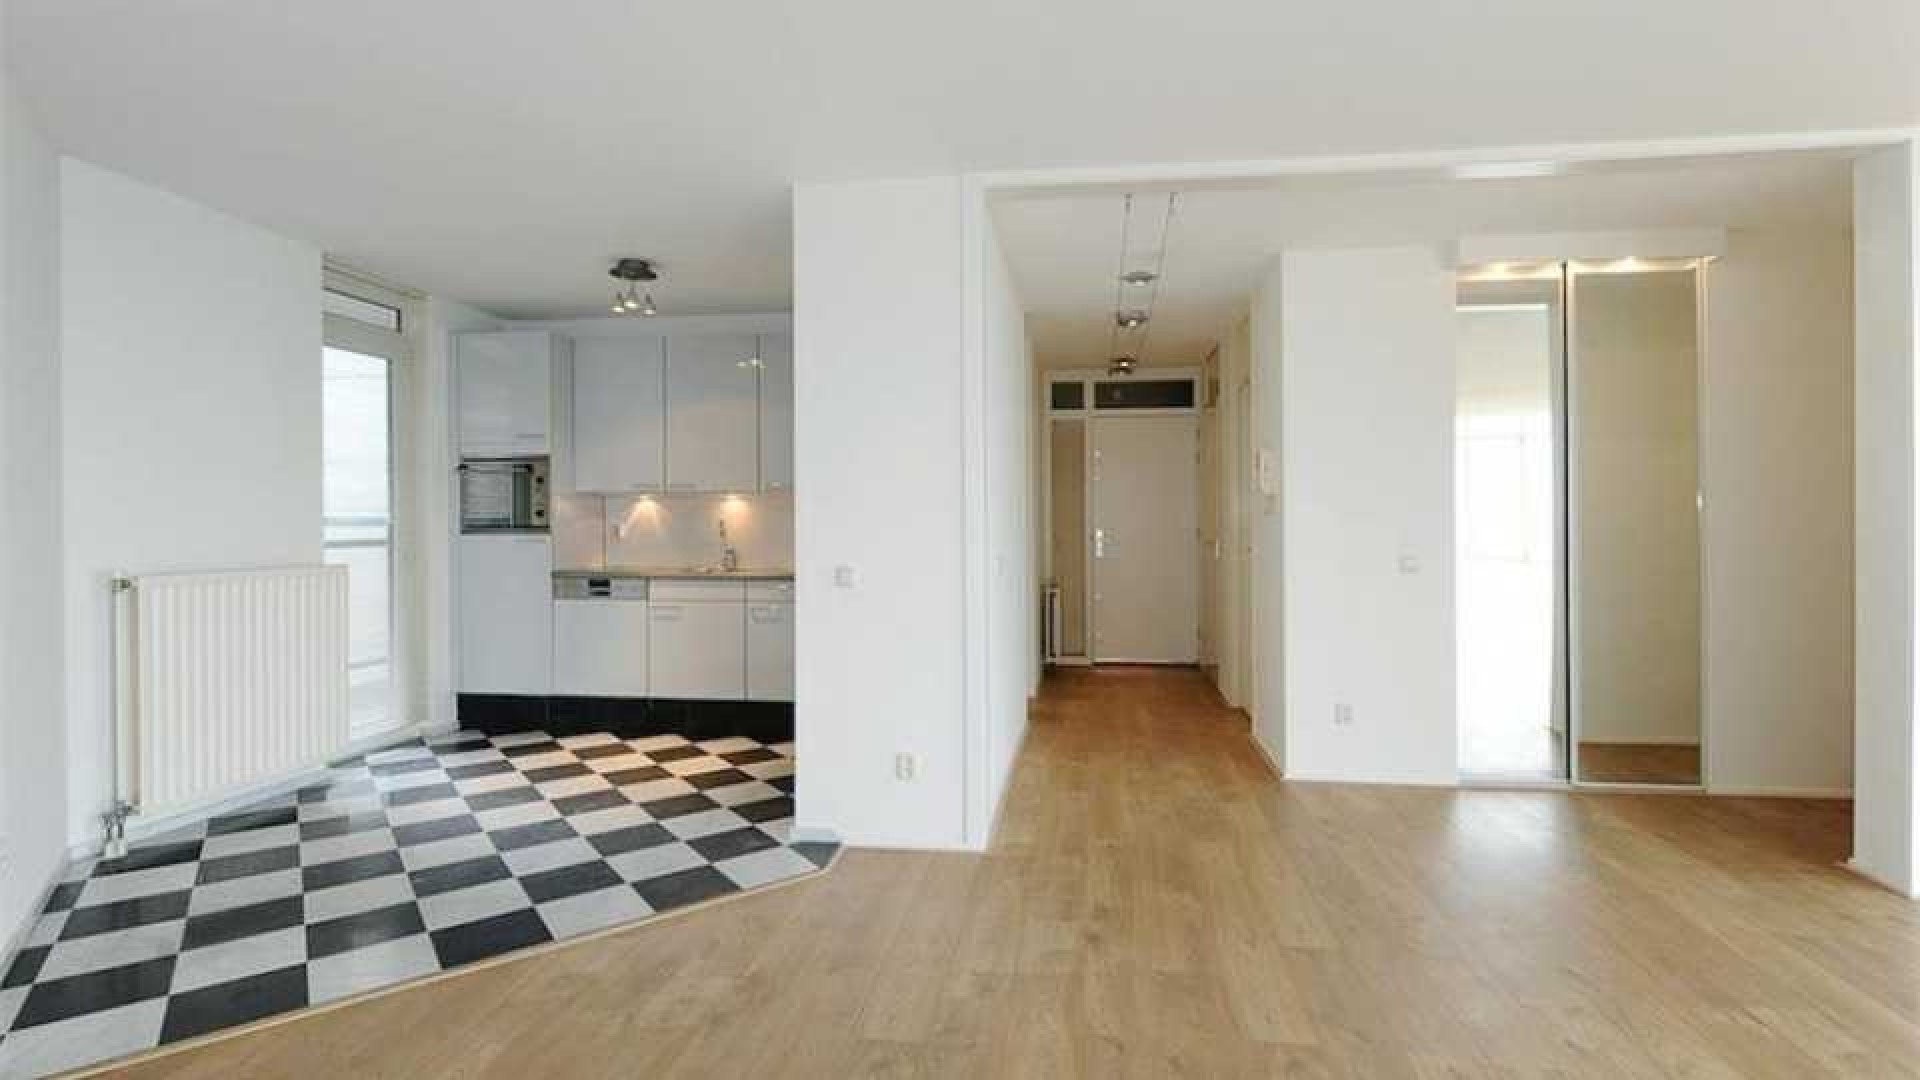 Dit is het nieuwe luxe appartement van Freek Vonk. Zie foto's